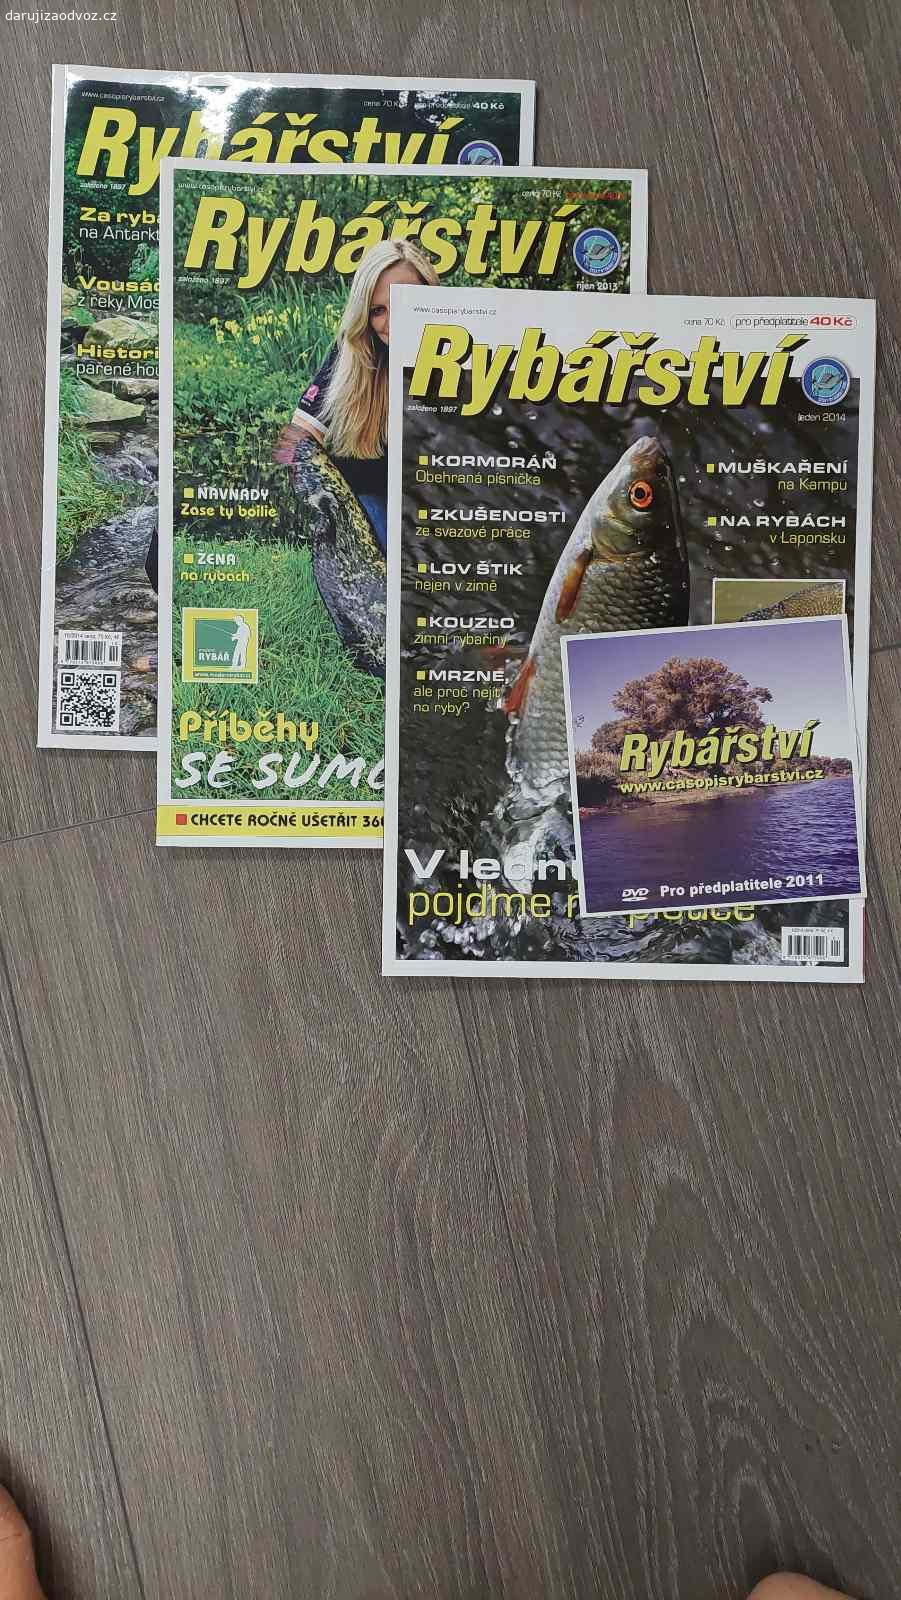 Daruji časopisy rybářství včetně CD.. Za odvoz přenechám 3 časopisy a CD.